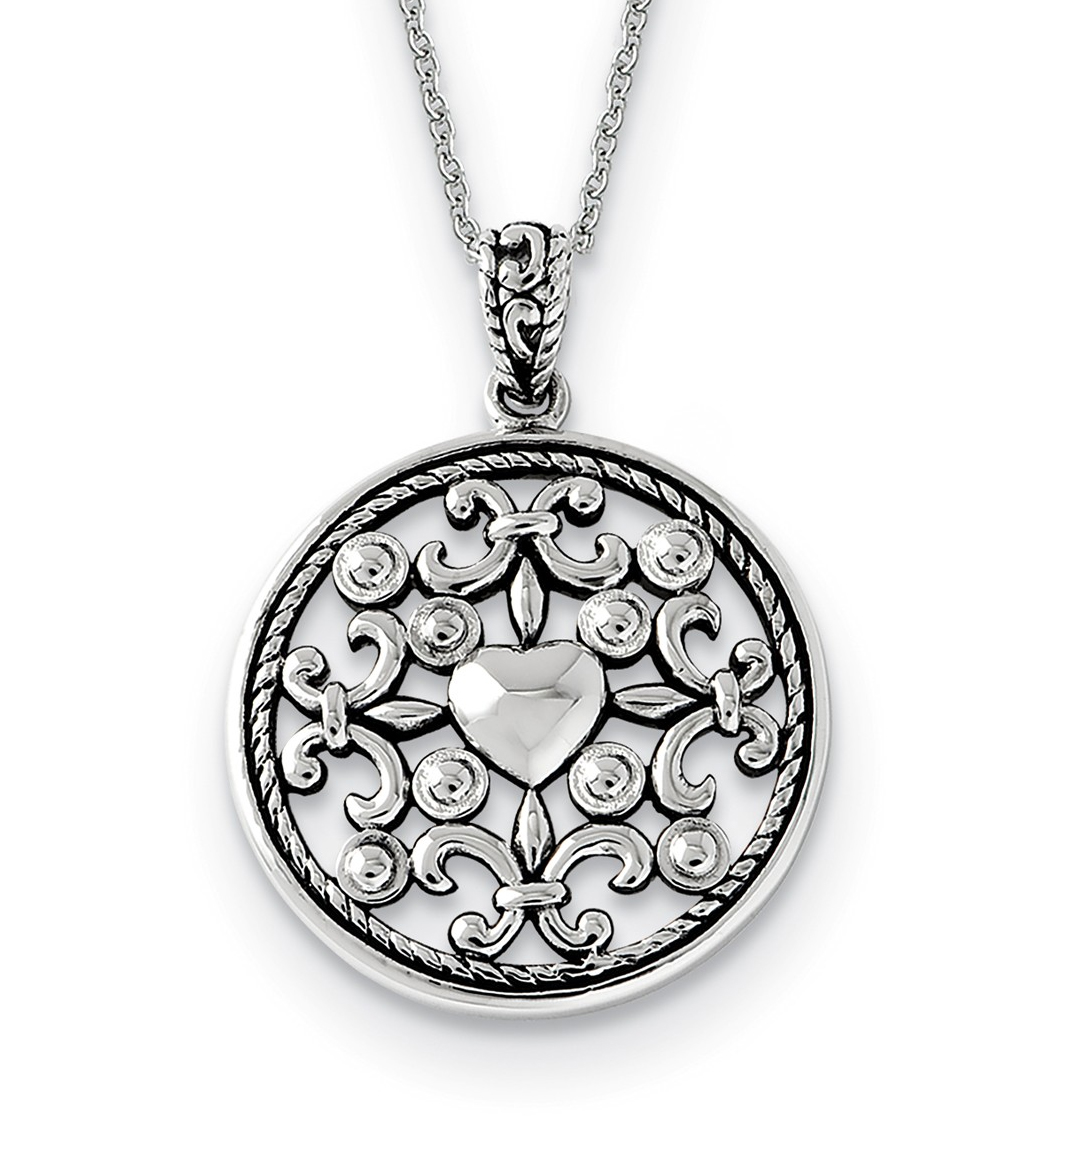   Rhodium-Plated Sterling Silver 'A Friend For All Seasons' Fleur De Lis Antique Pendant Necklace, 18